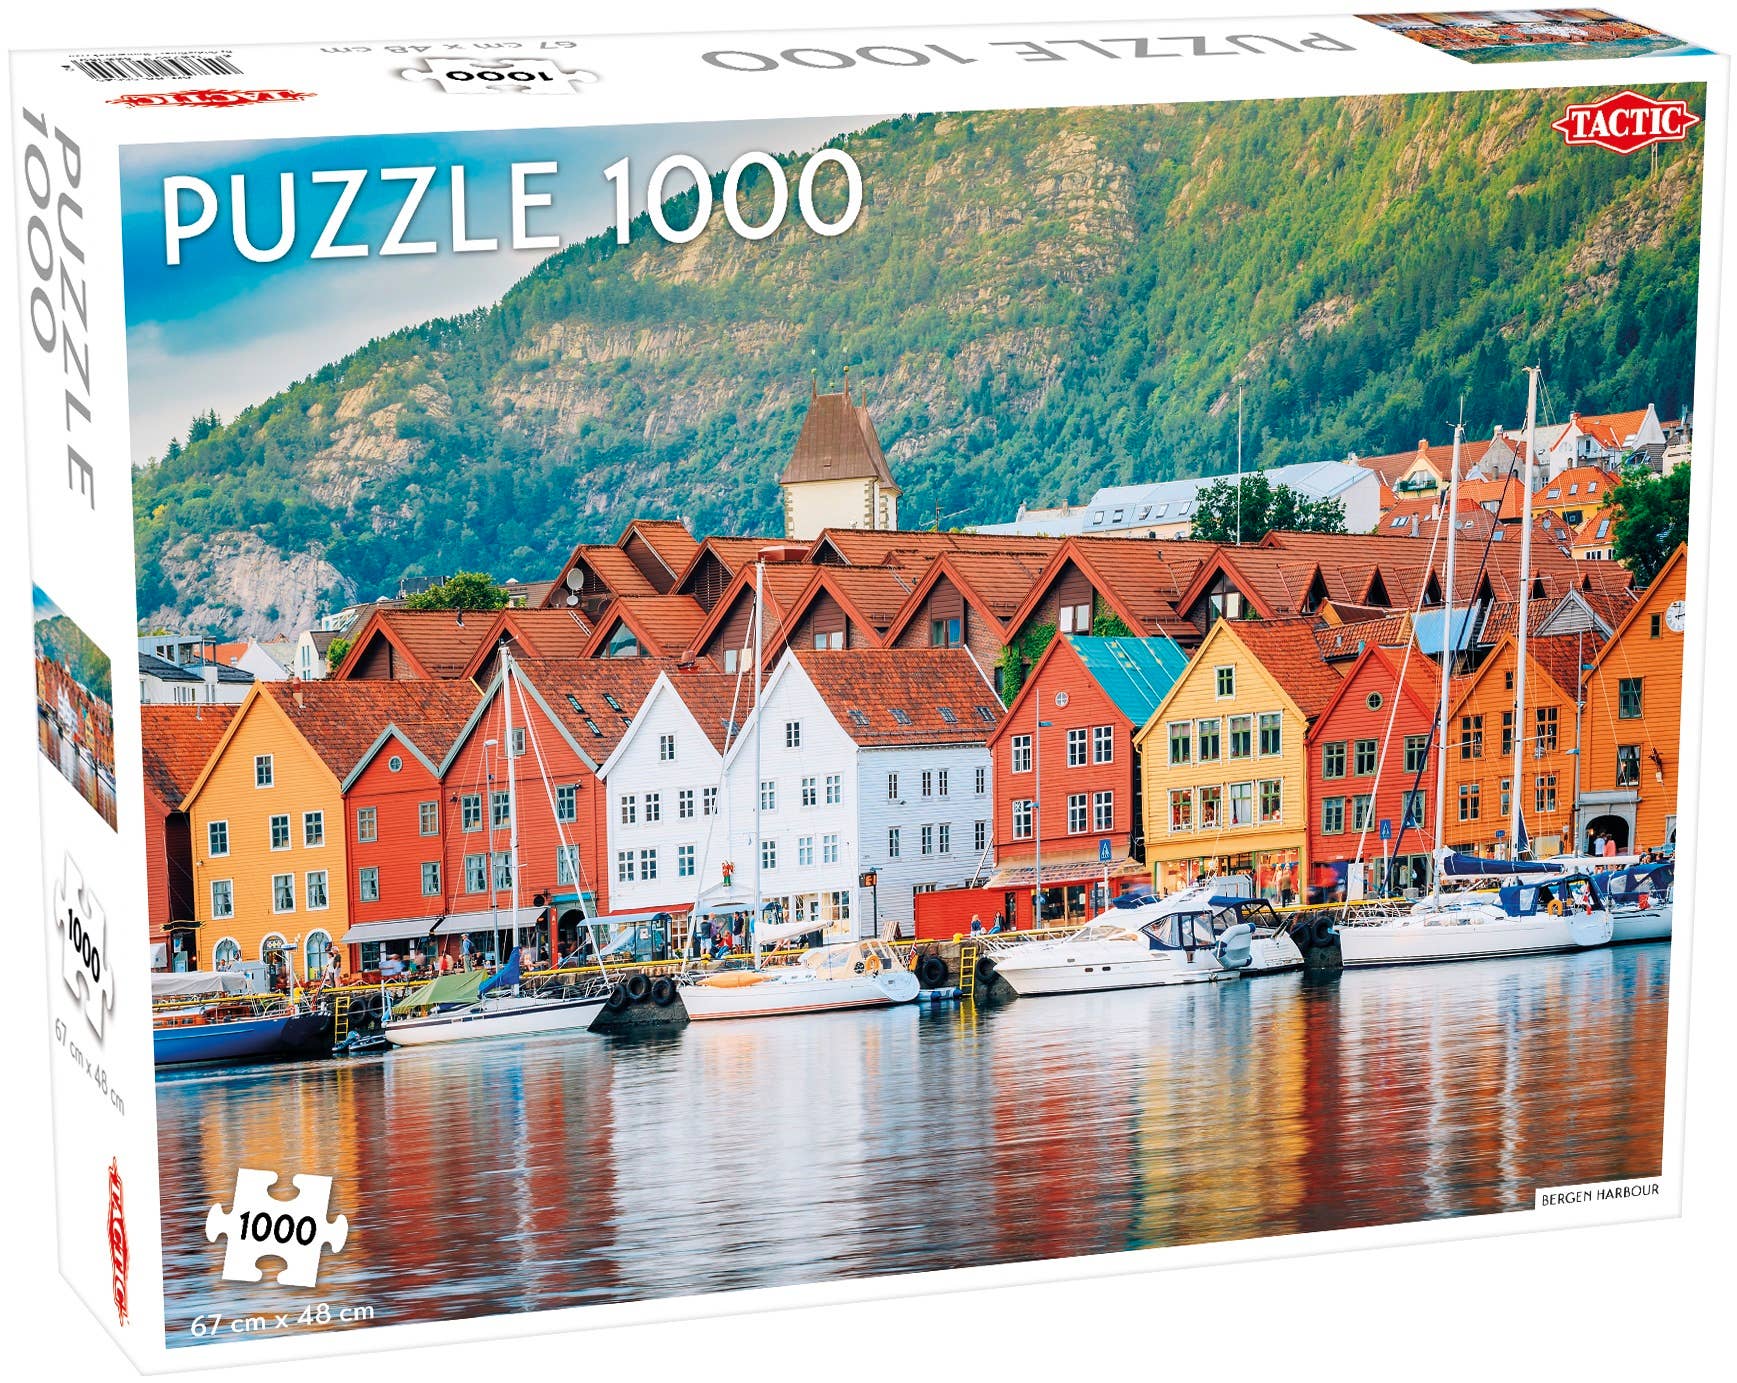 Puzzle: Bergen Norway 1000pc Puzzle